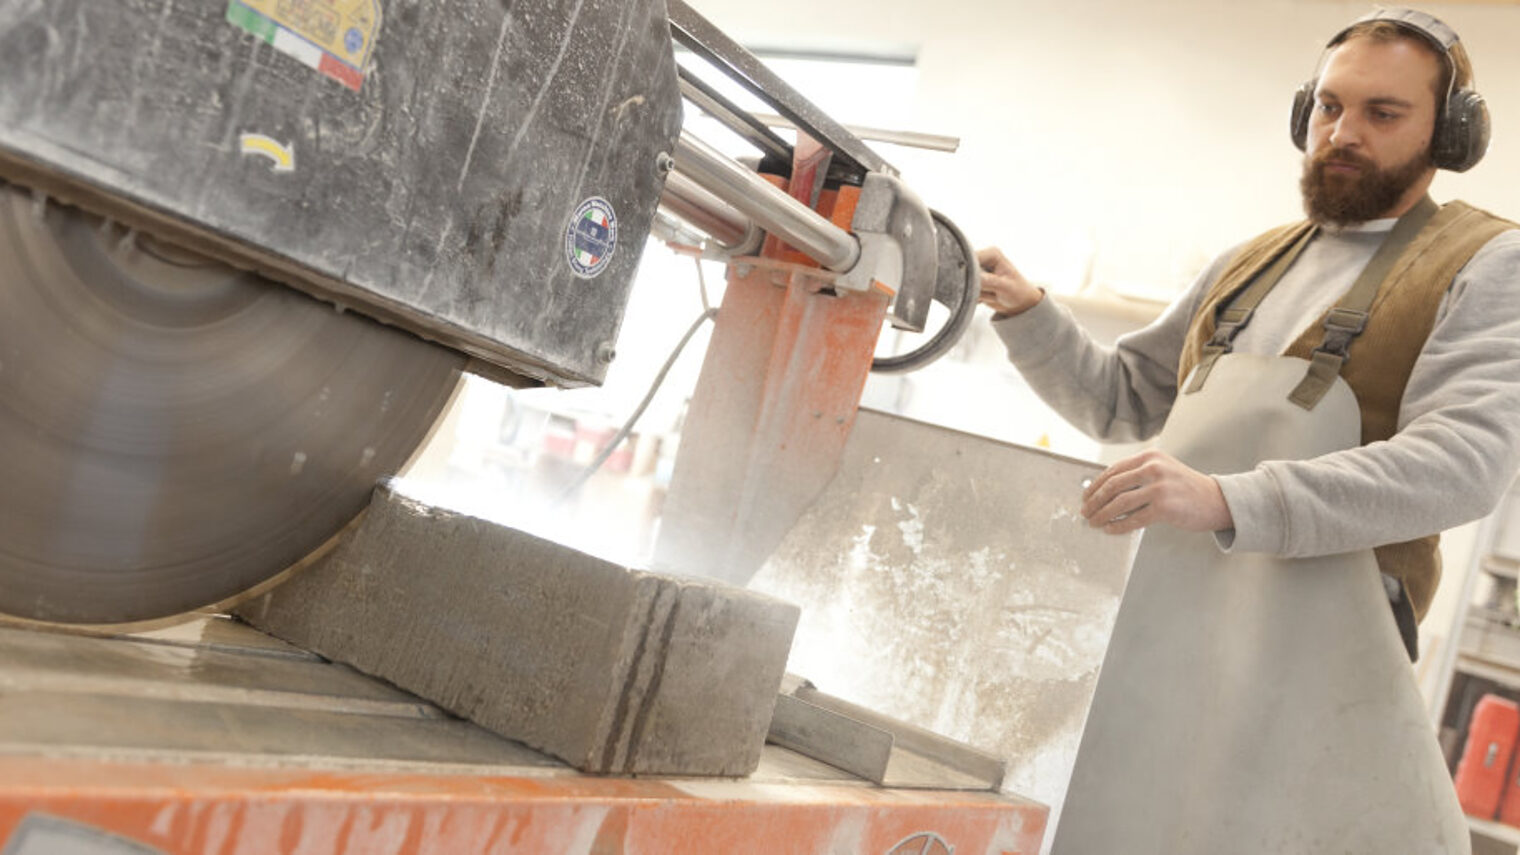 Mann in Arbeitskleidung sägt mit einer großen maschinellen Säge einen Steinblock in einer Werkstatt.